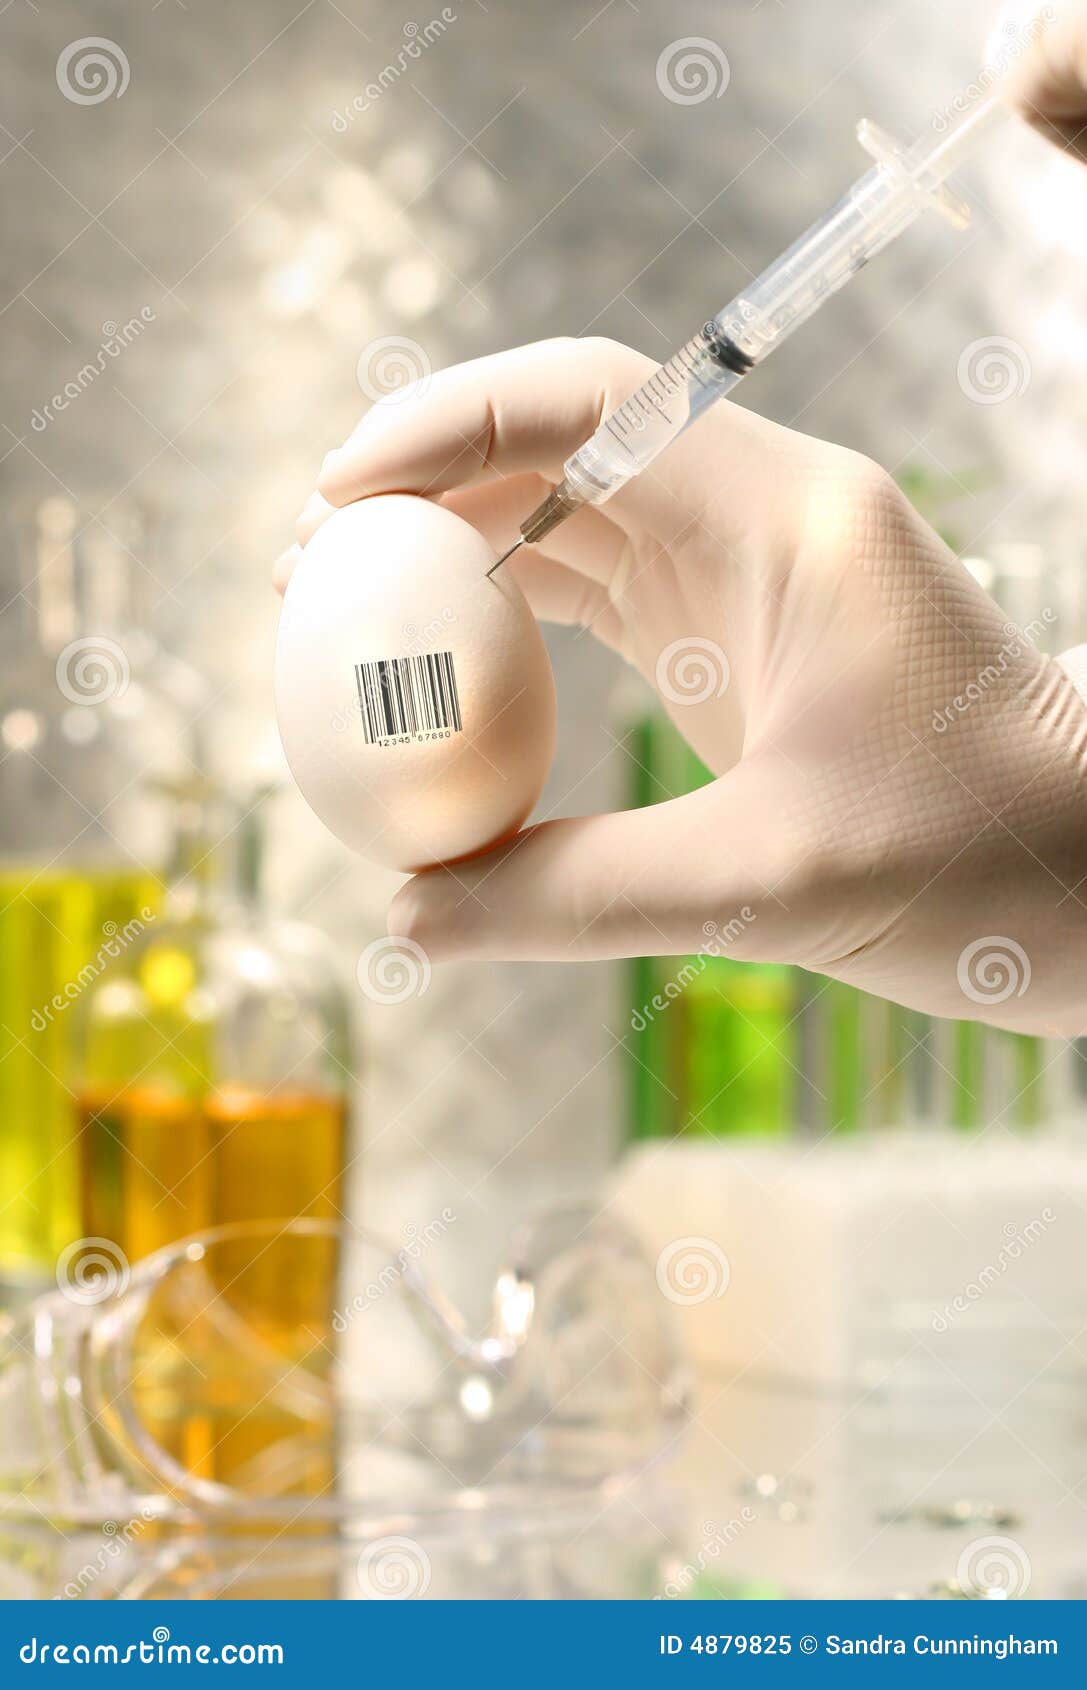 close-up of syringe injecting egg